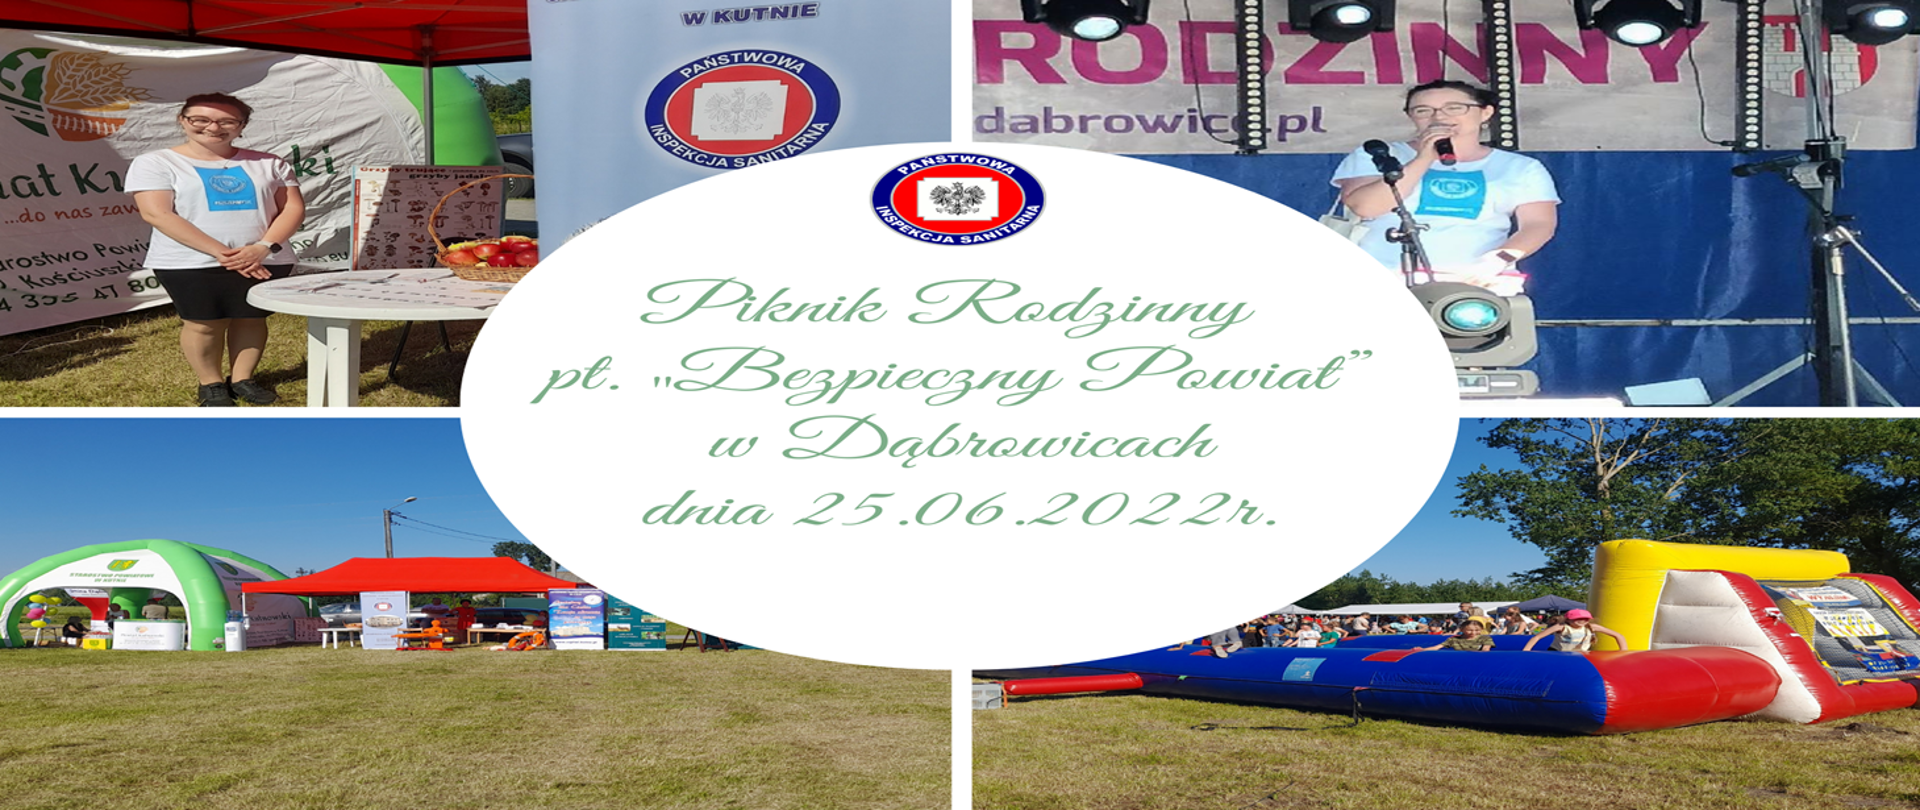 Piknik rodzinny pt. „Bezpieczny Powiat” w Dąbrowicach dnia 25.06.2022r.